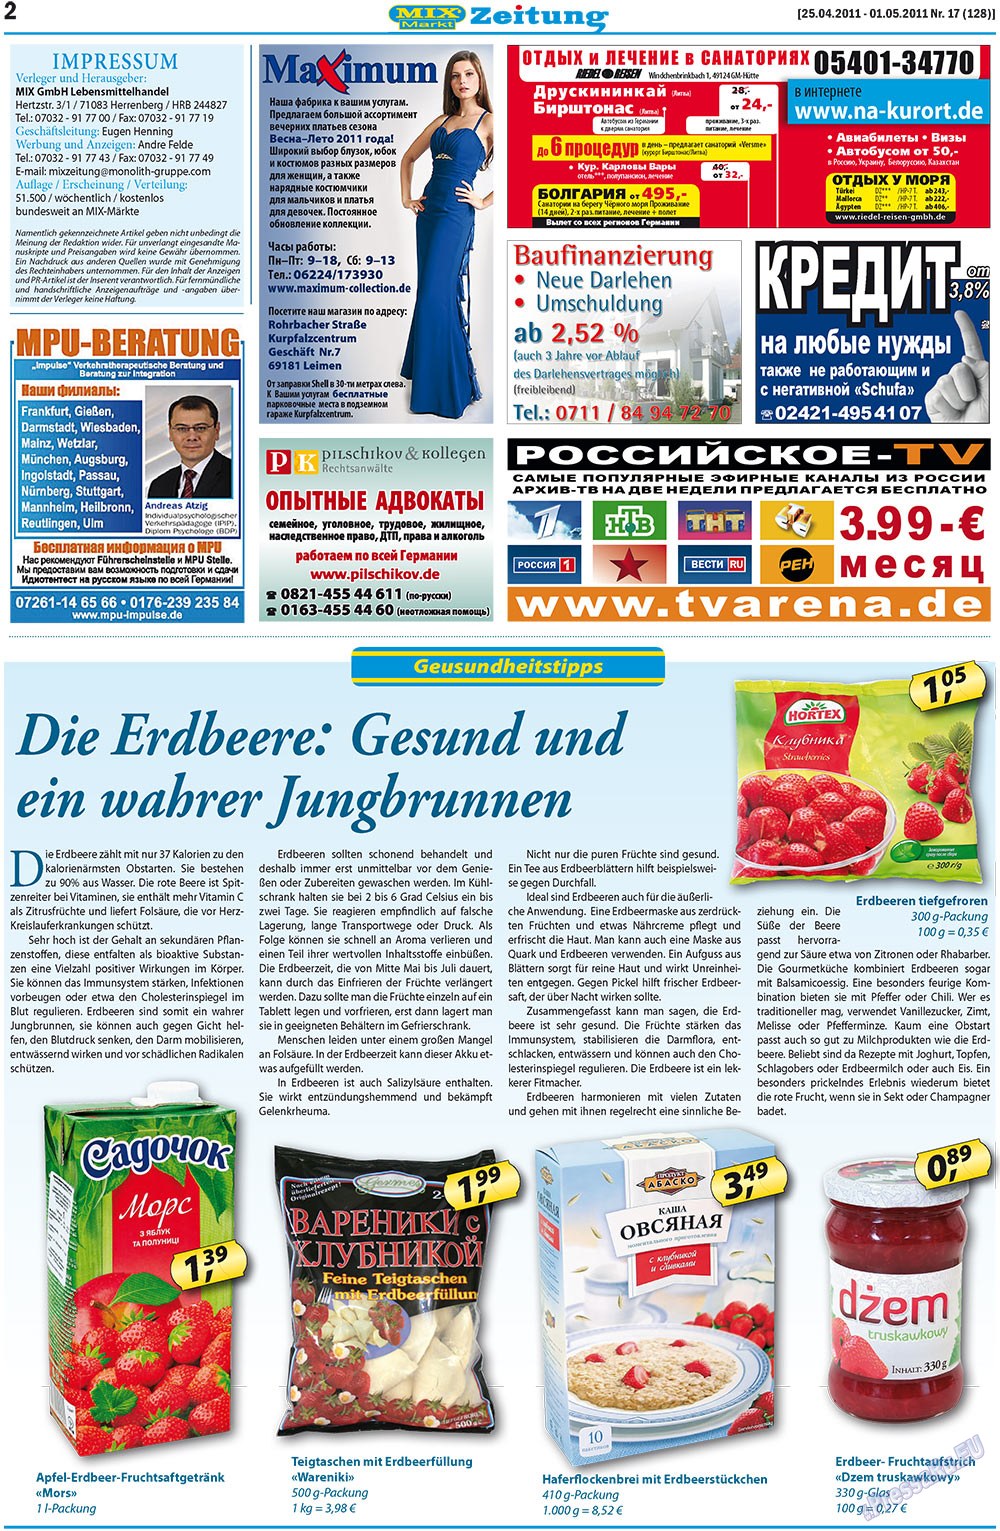 MIX-Markt Zeitung (газета). 2011 год, номер 17, стр. 2